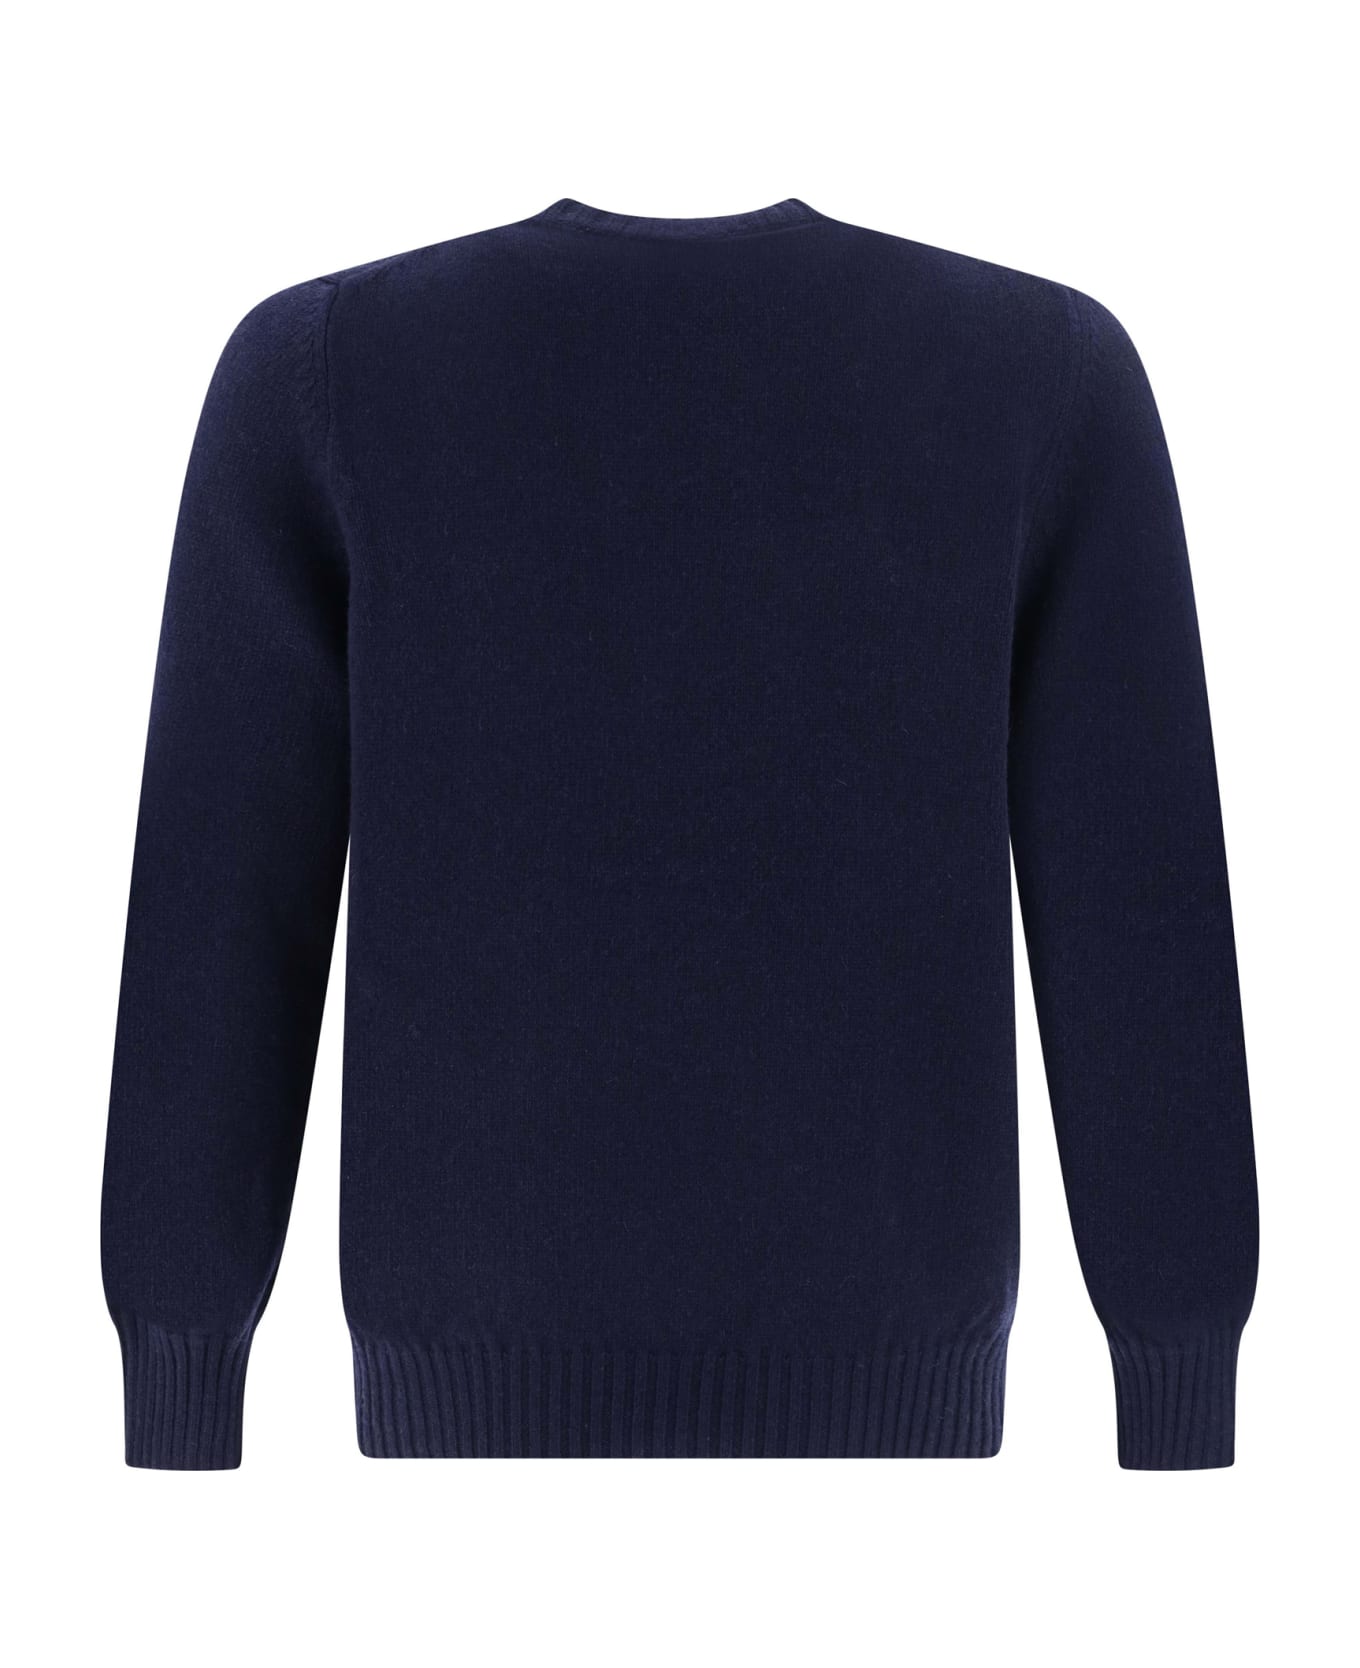 Aragona Sweater - Blu Notte